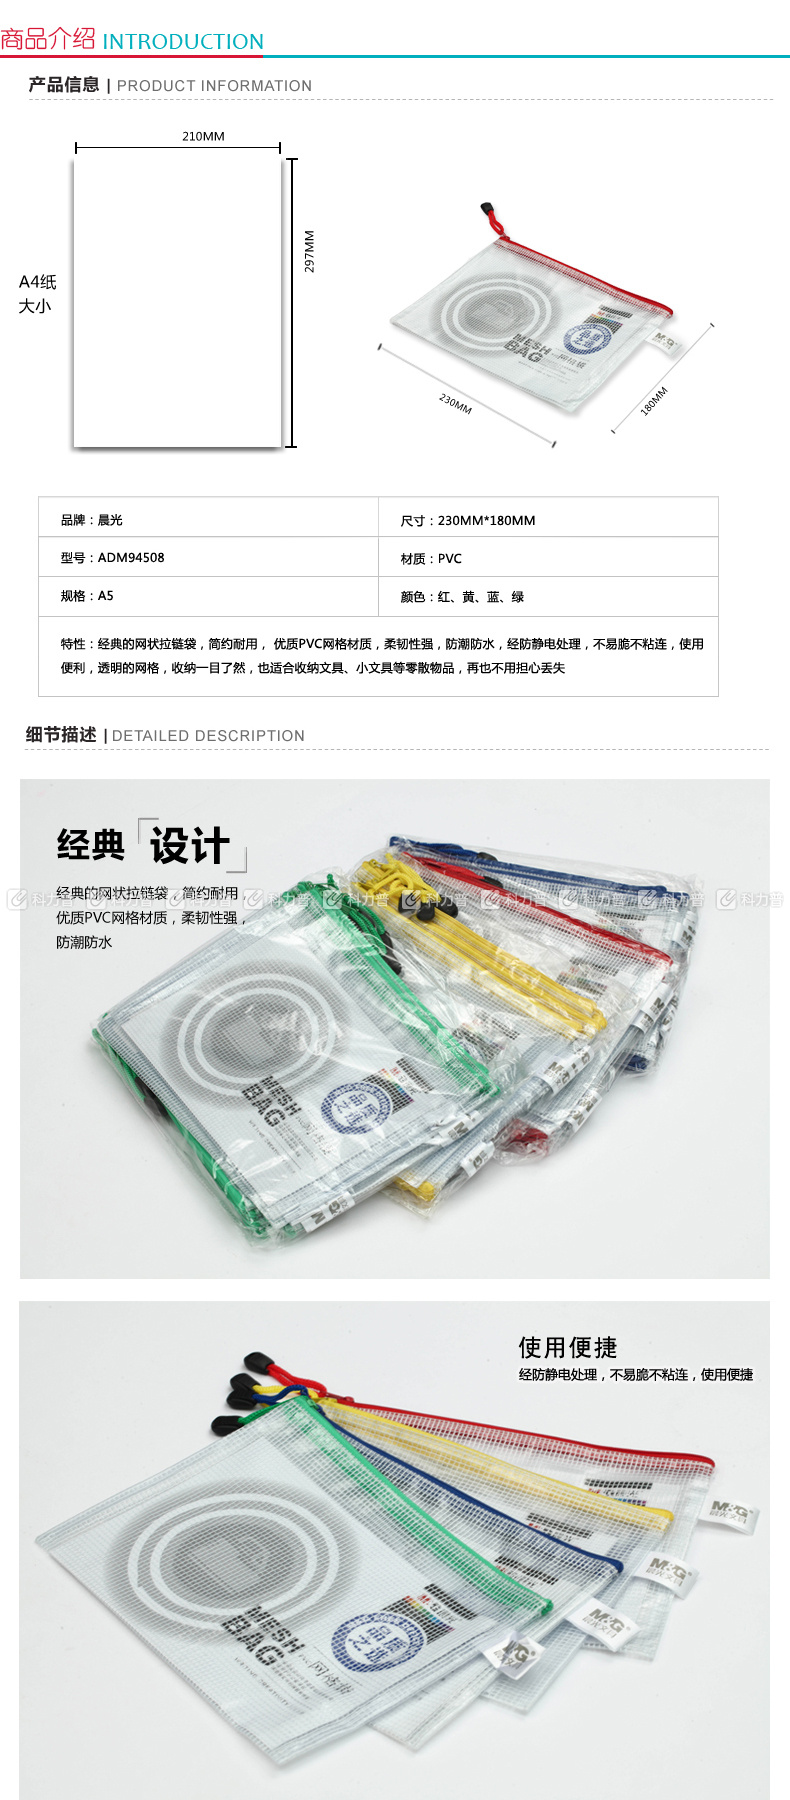 晨光 M＆G PVC拉链袋 ADM94508 A5 (红色、蓝色、黄色、绿色) (颜色随机)